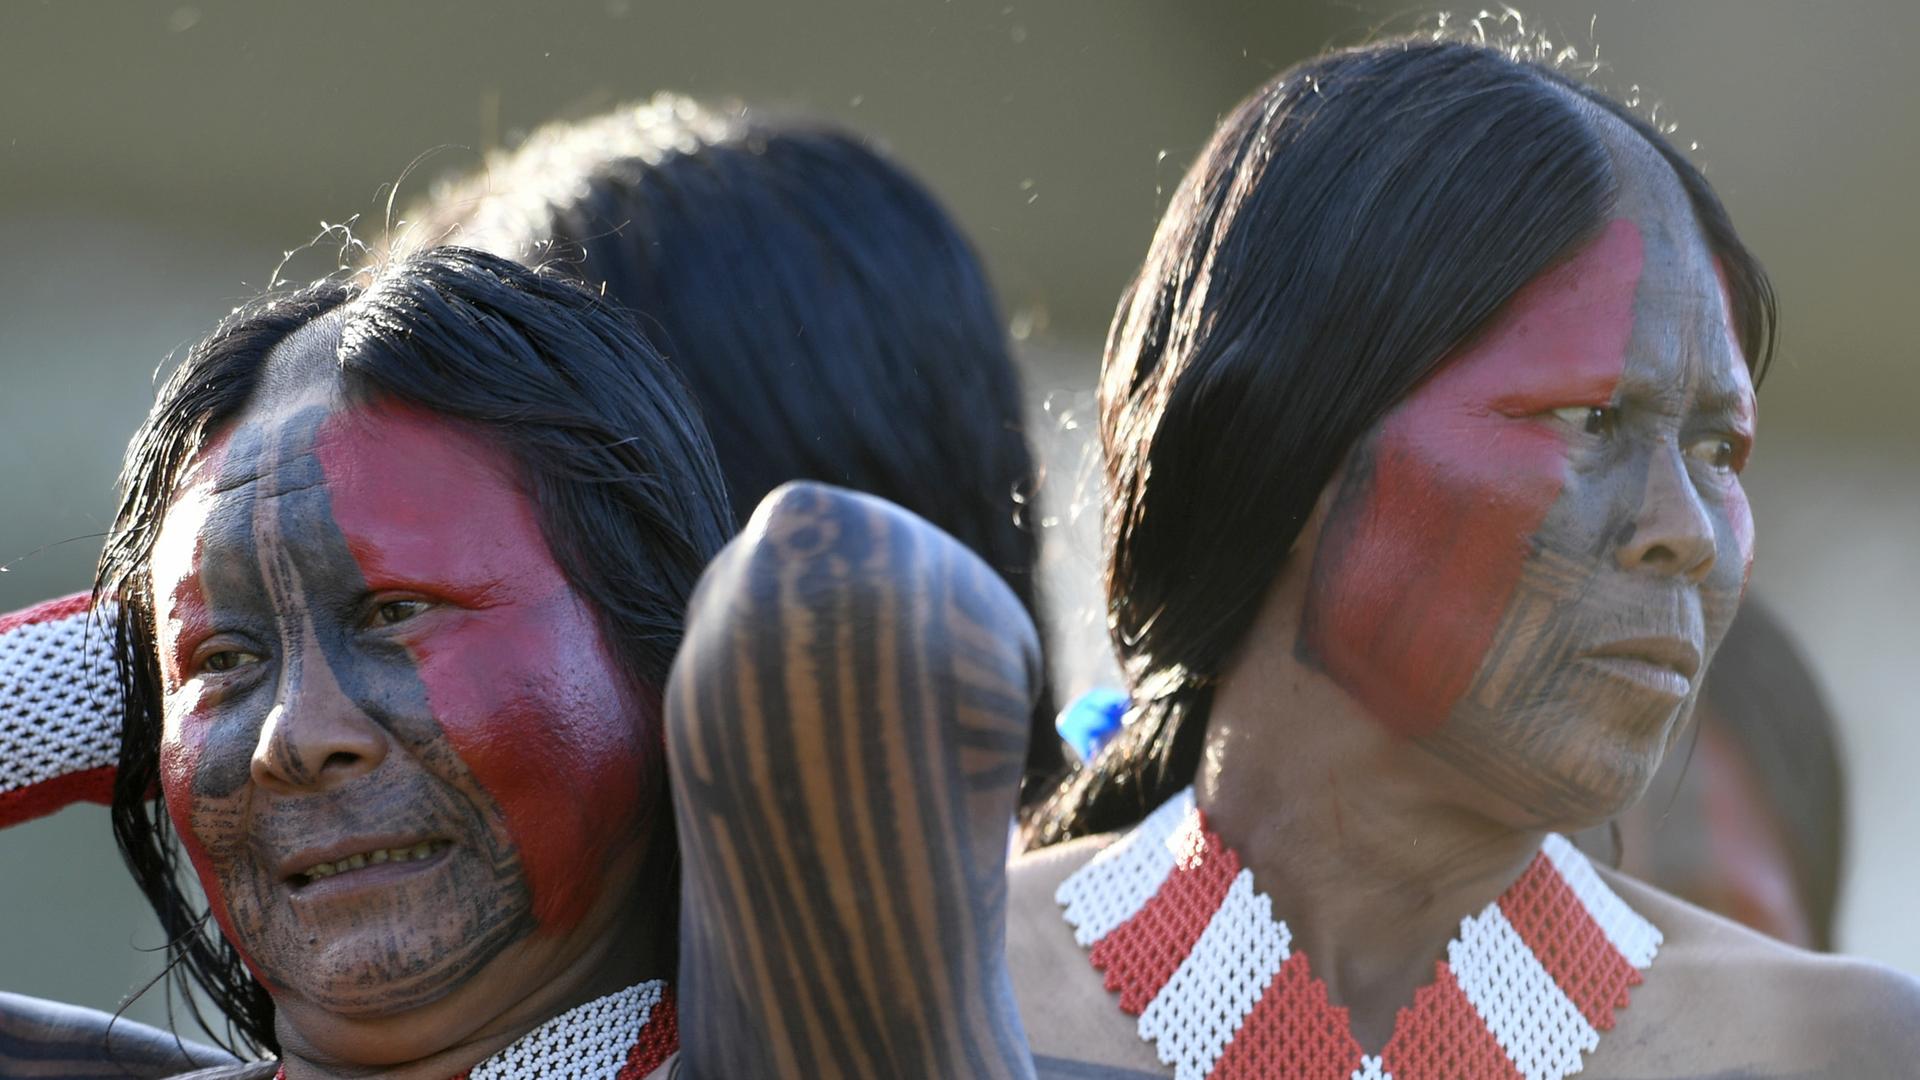 Zwei indigene Menschen aus Brasilien mit ihrem traditionellen Körperschmuck. 